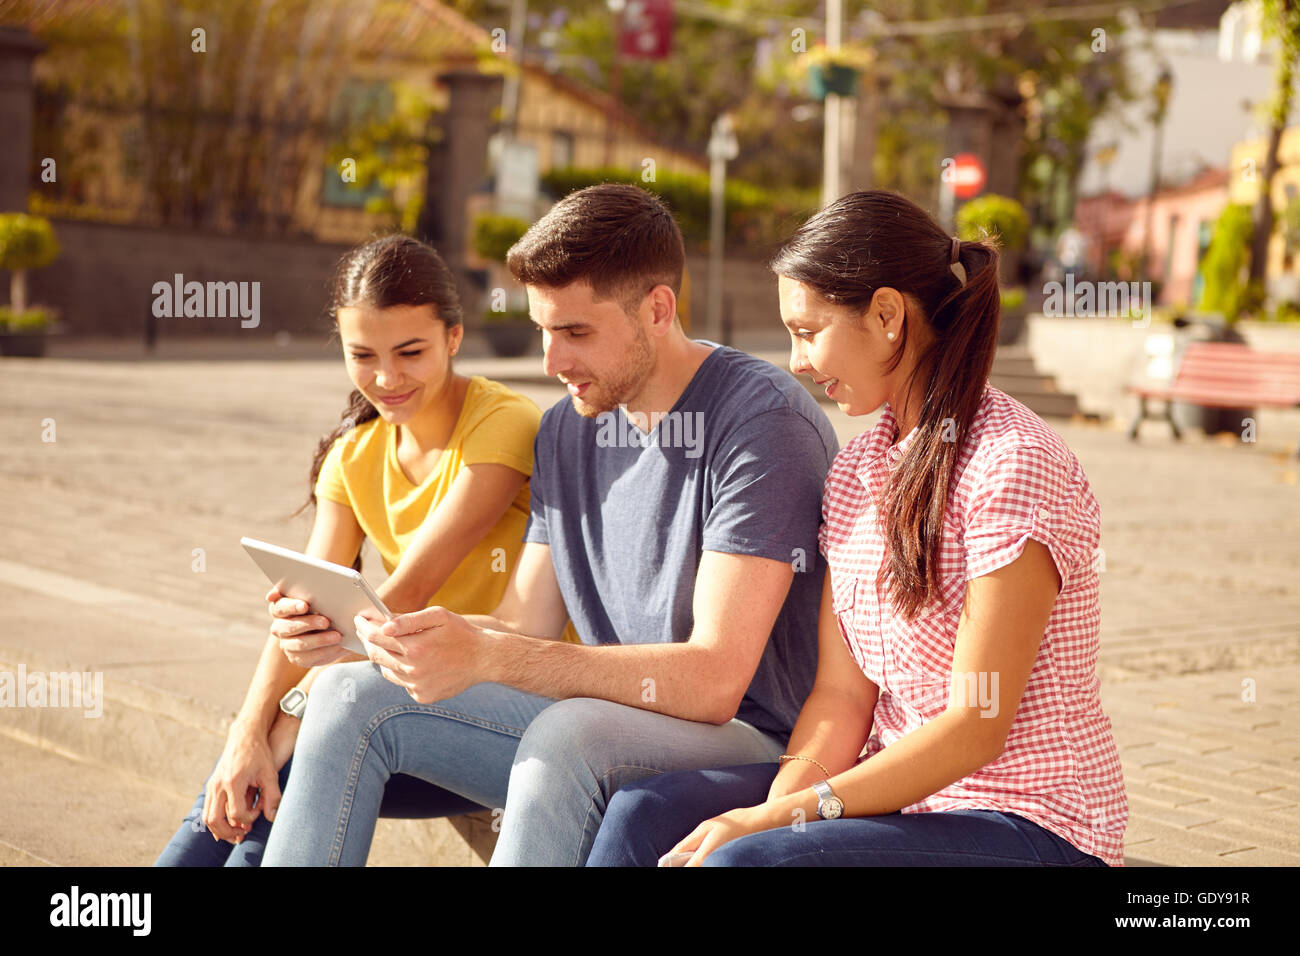 Drei glückliche junge Menschen sitzen in einer Stadt Platz auf einer Stufe mit einem Tablet suchen, während lächelnd lässig in Jeans und t gekleidet-sh Stockfoto